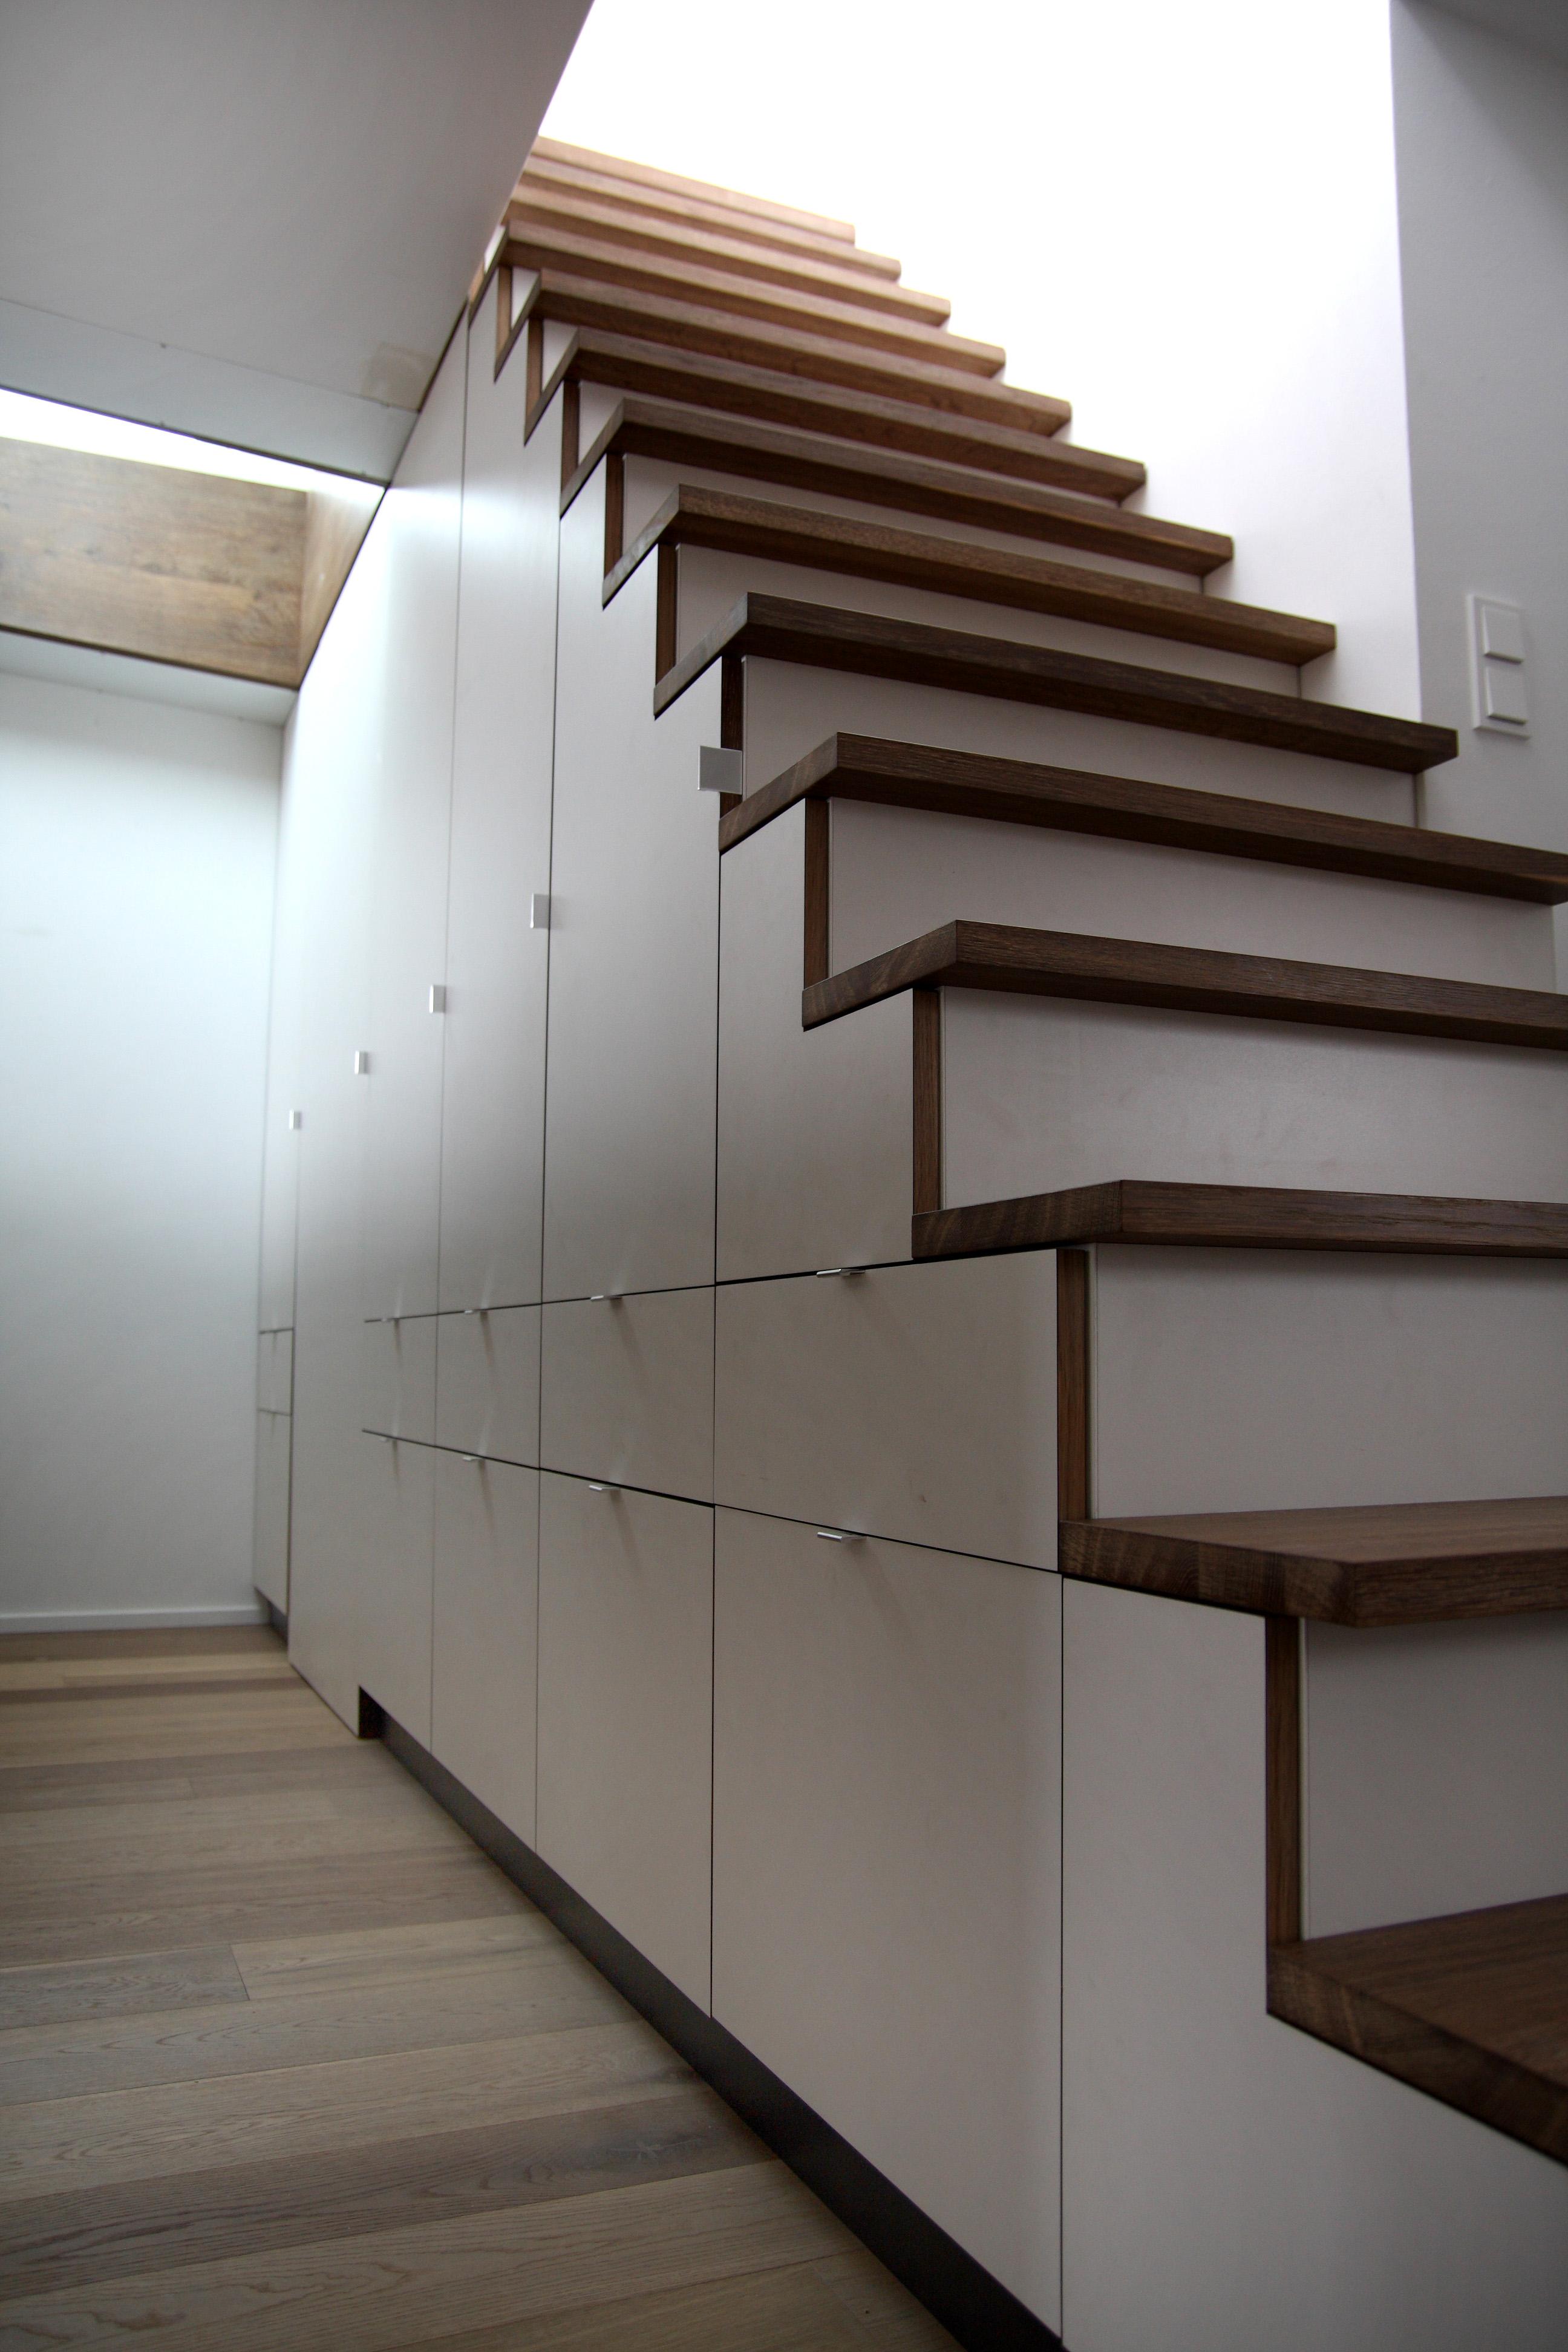 Treppe mit integriertem Einbauschrank #einbauschrank #holzkonstruktion ©Spaett Architekten